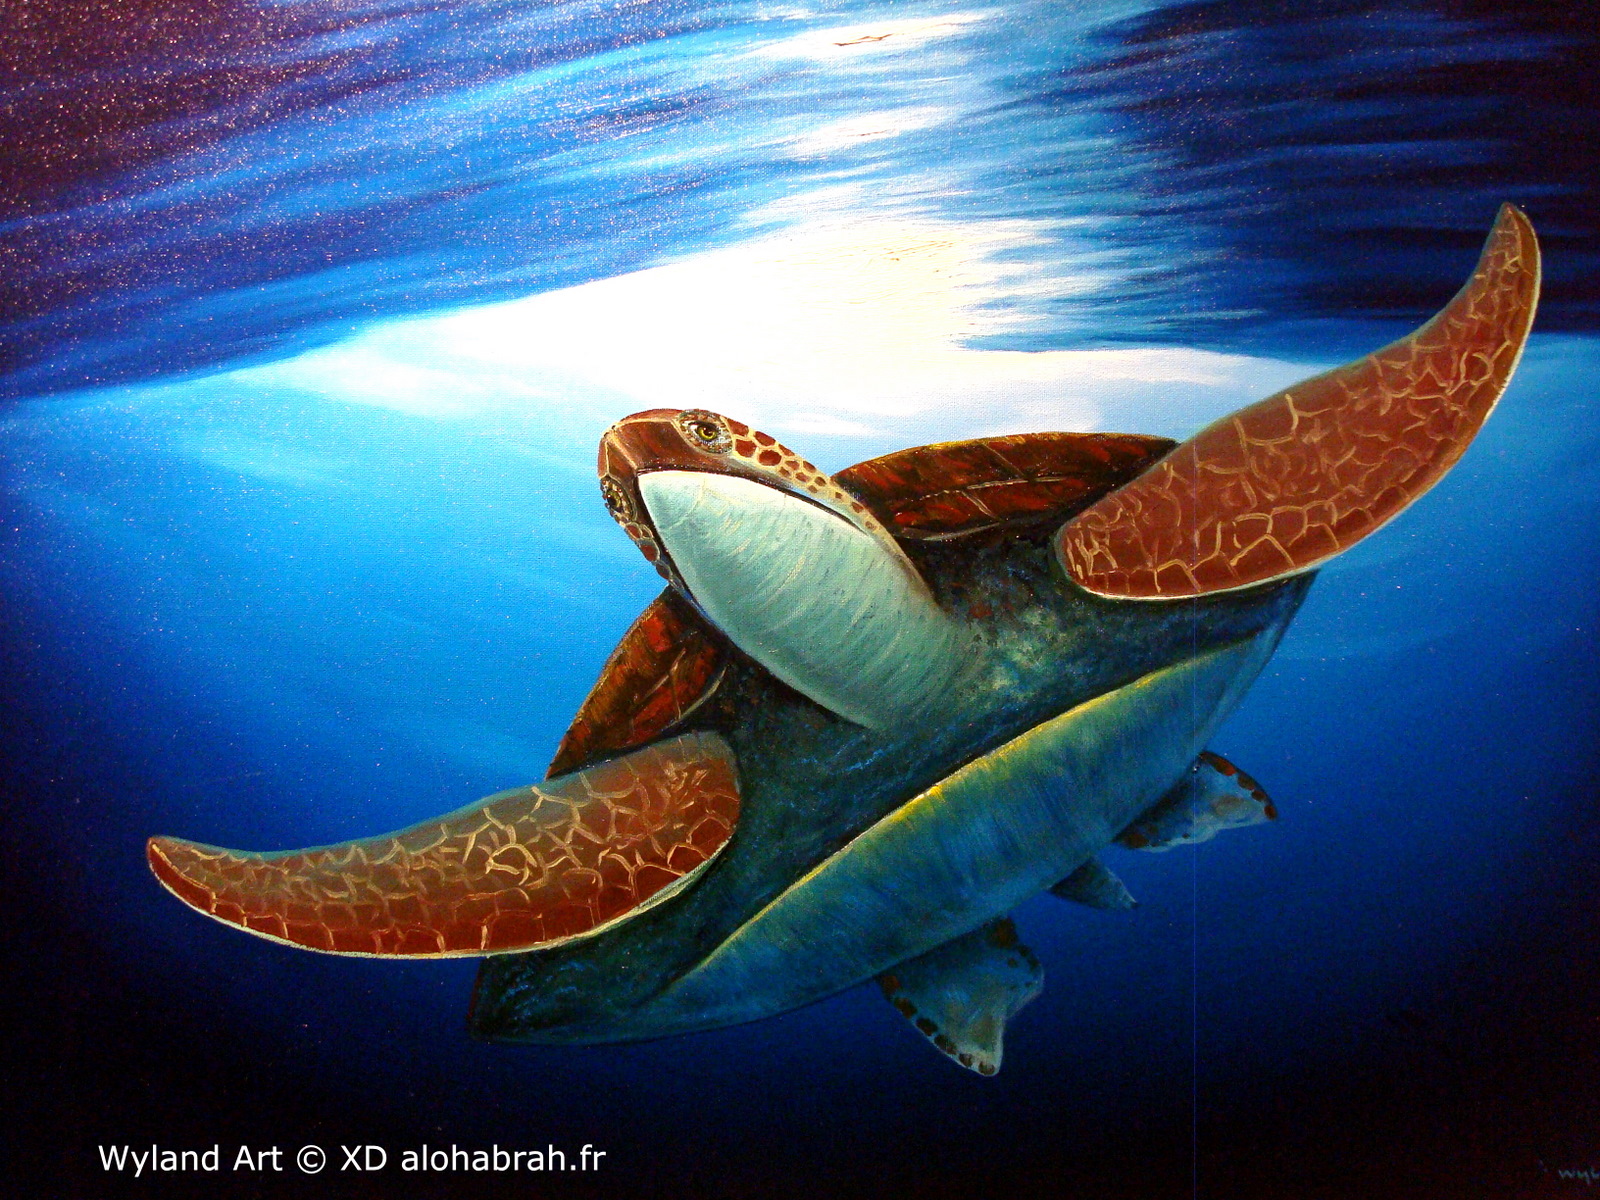 Hawaiian turtle 02 - Wyland Art © XD alohabrah.fr